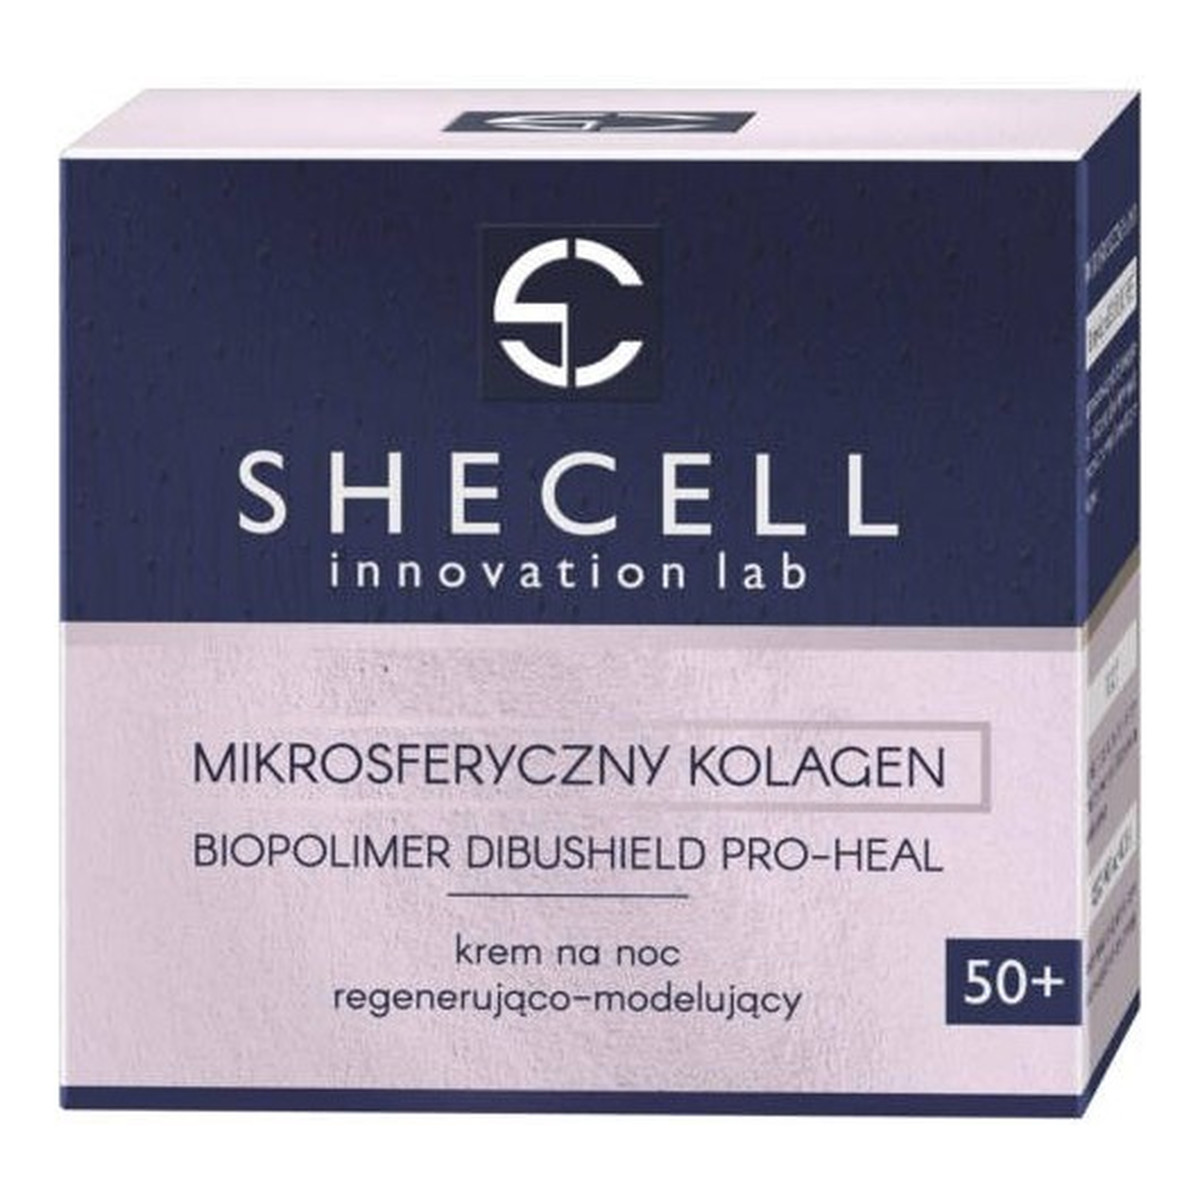 Shecell Innovation Lab mikrosferyczny kolagen 50+ krem na noc regenerująco-modelujący 50ml